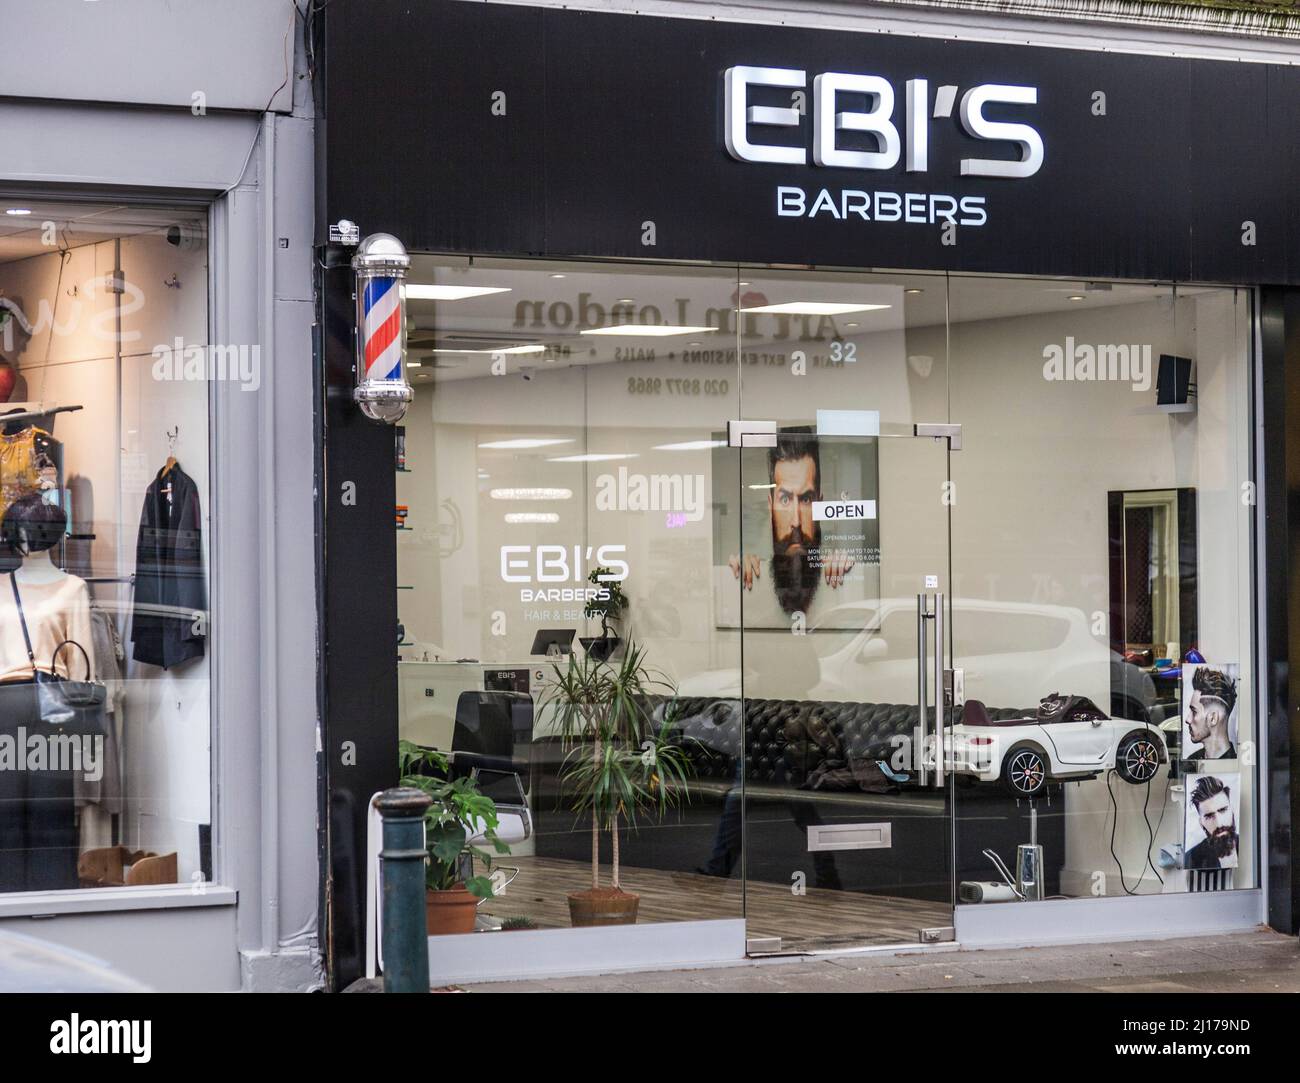 Ebi's Barbers in Teddington,London,UK Stock Photo